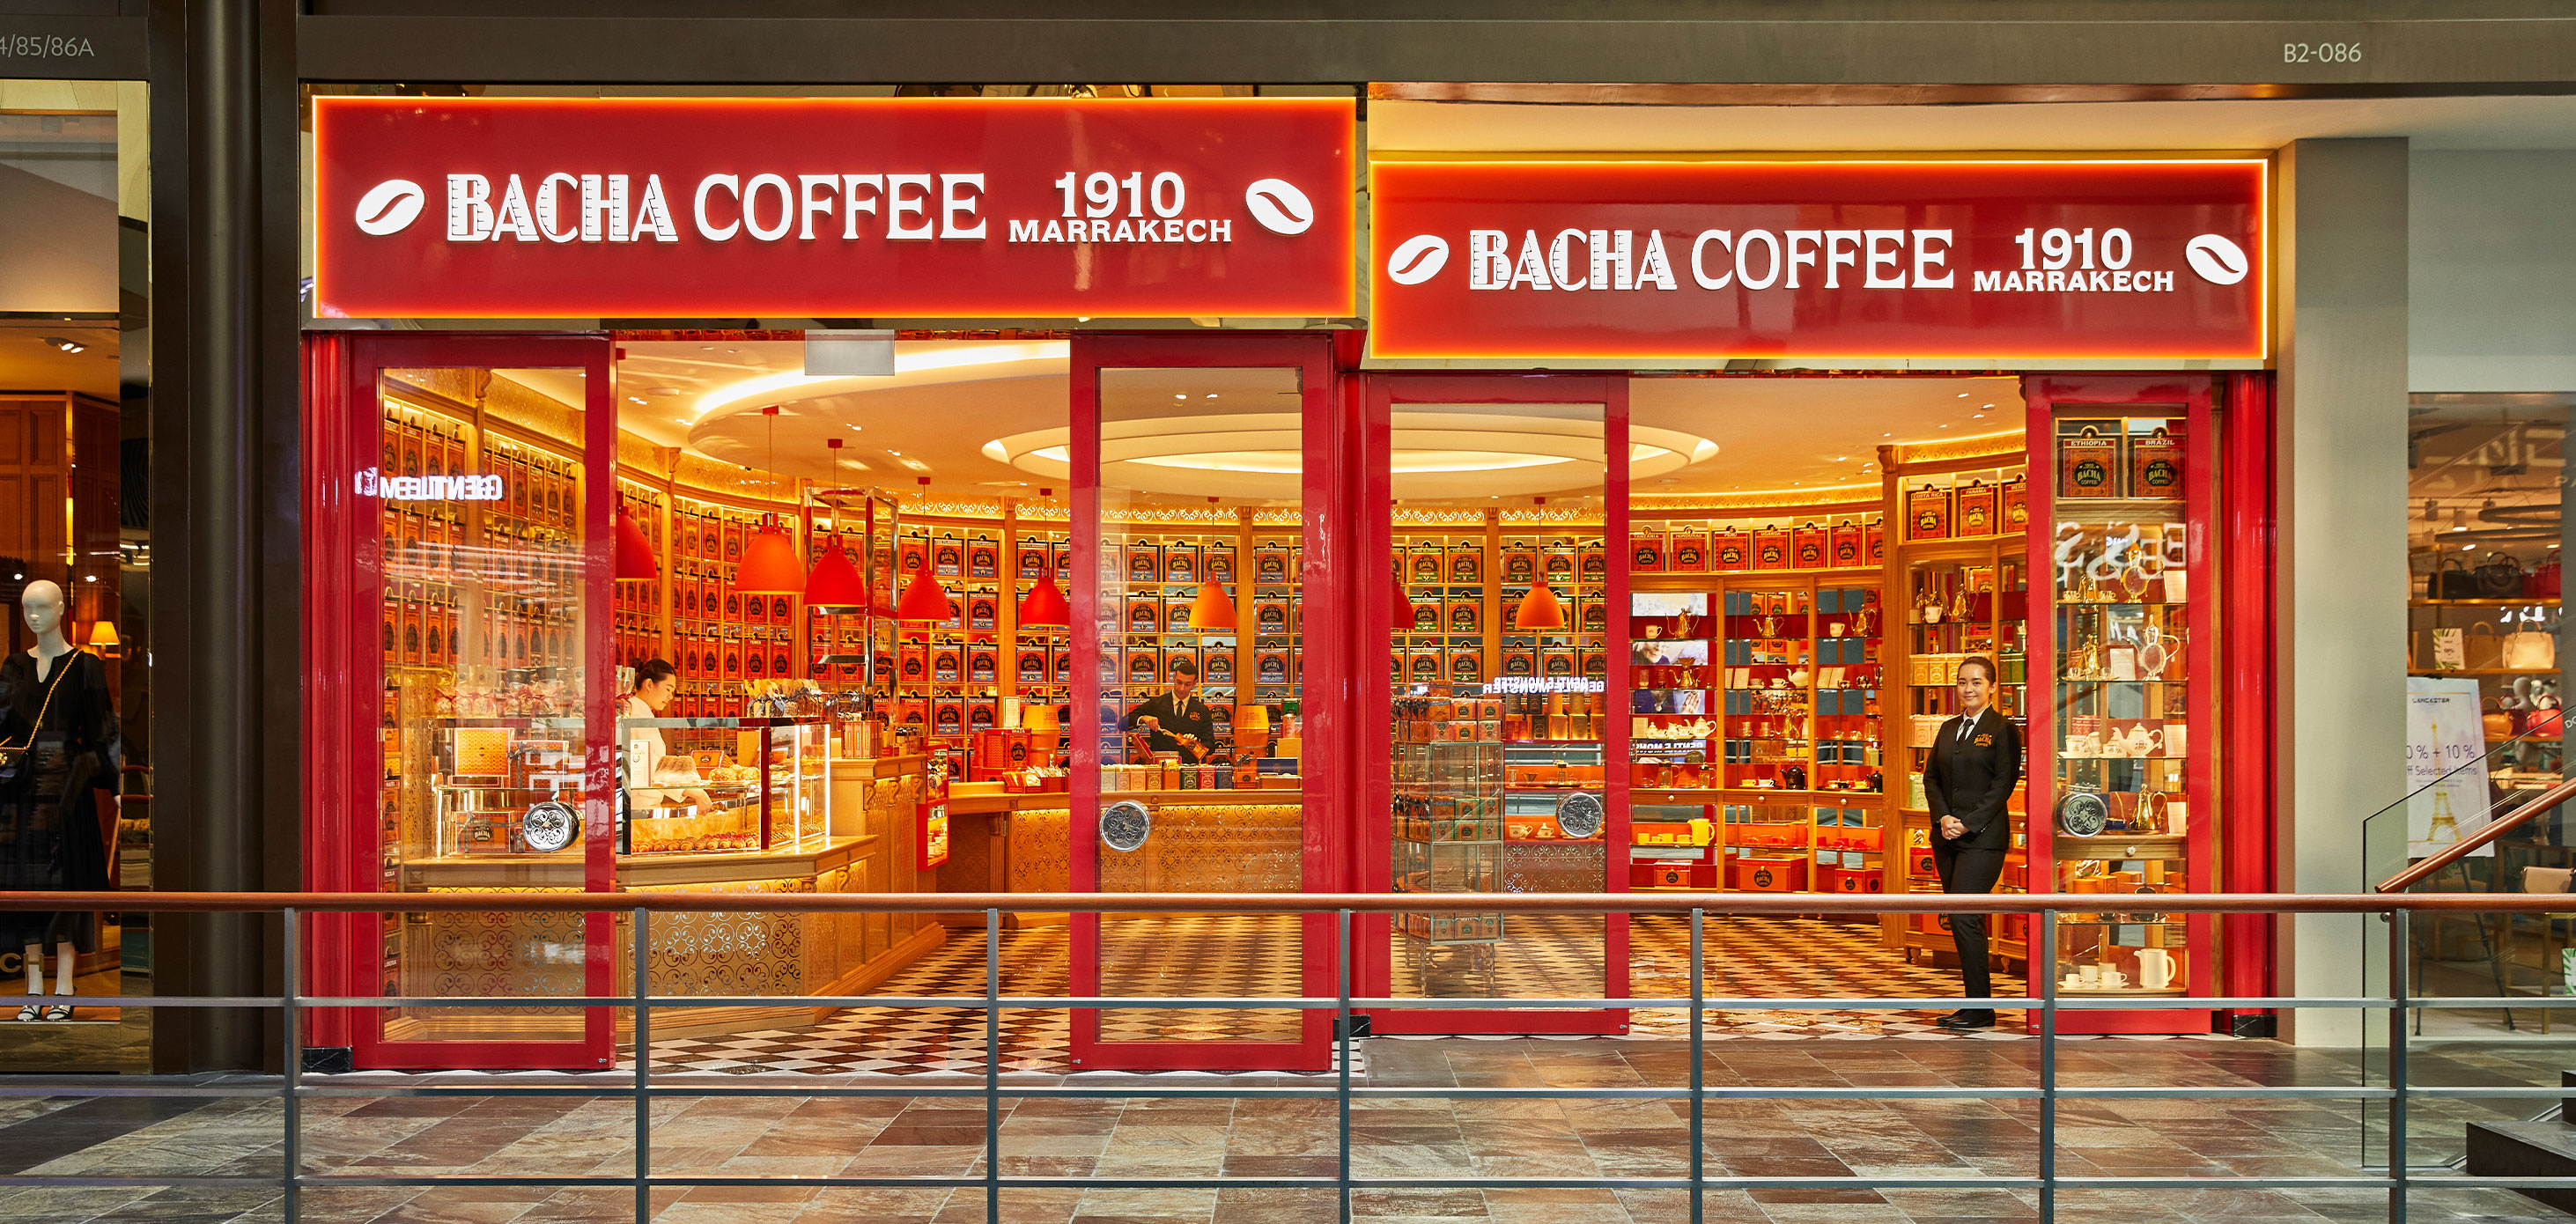 バシャコーヒー、シンガポールのザ・ショップス‐マリーナベイ・サンズに6番目のグローバルコーヒーブティックのオープンを発表